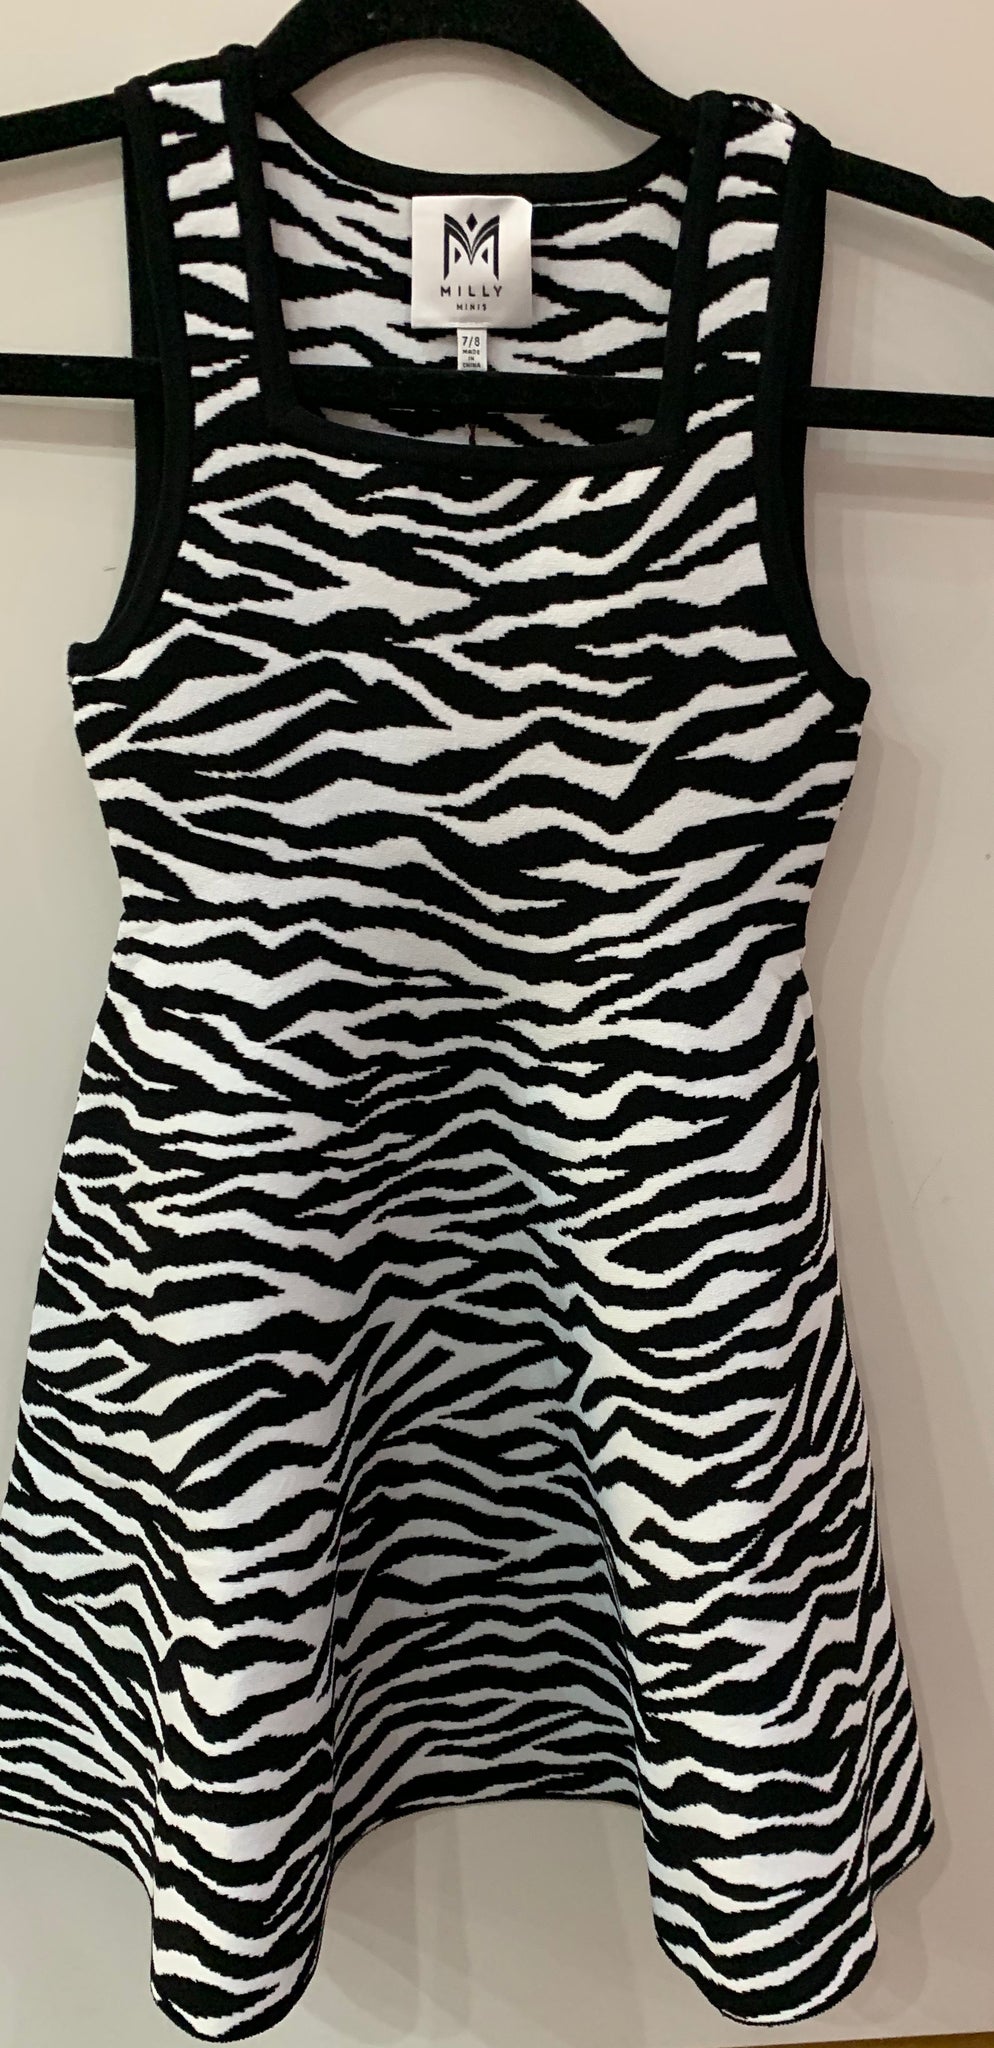 Milly Knit Dress - Zebra Print